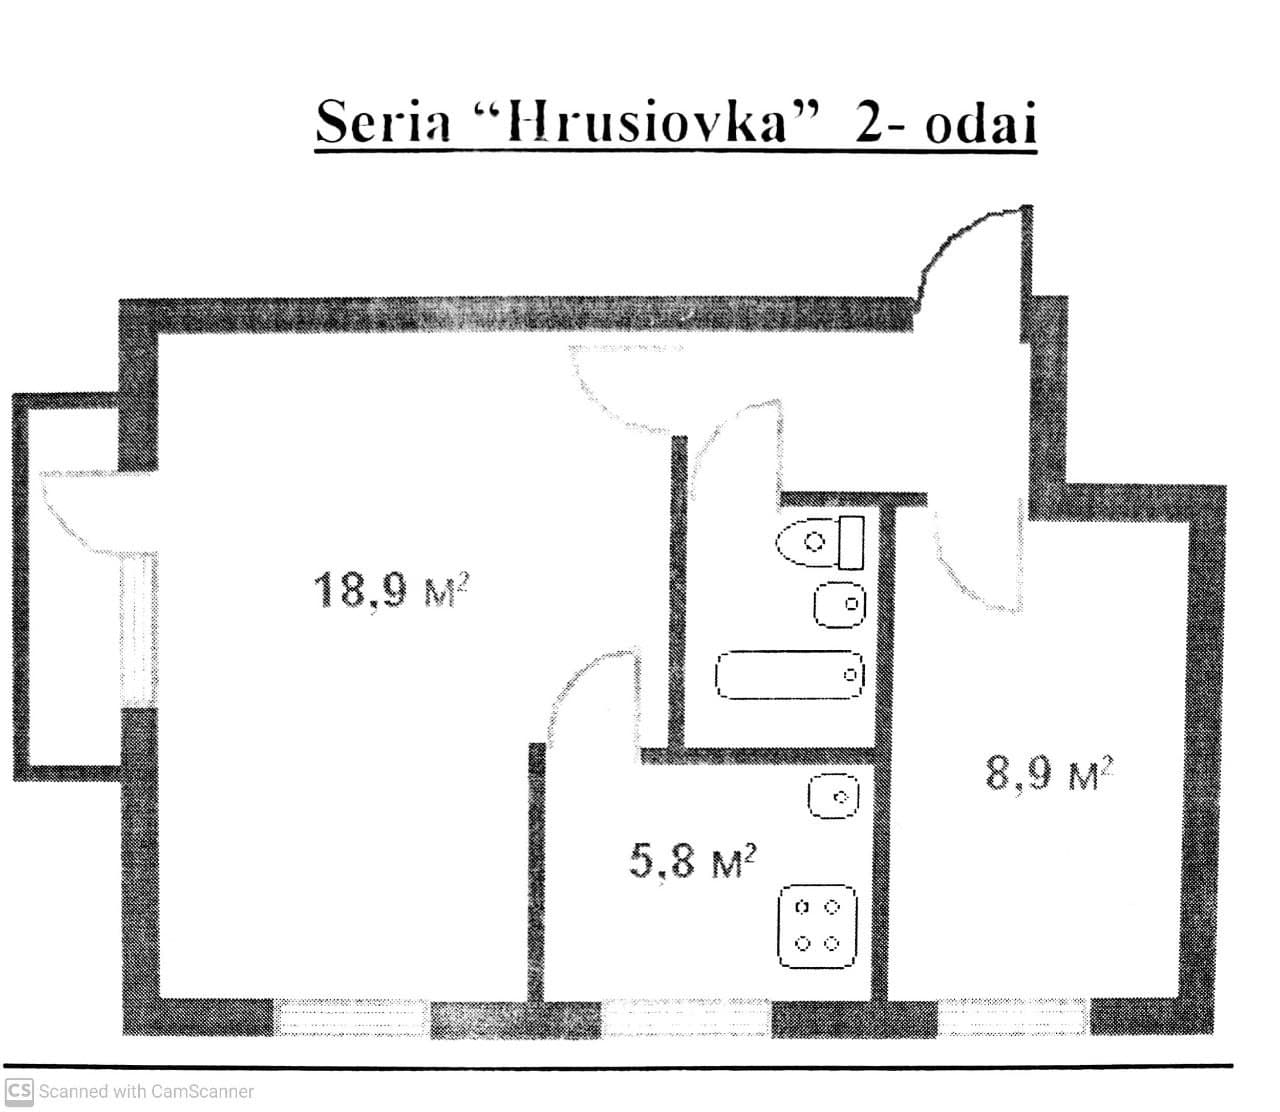 VÂNDUT Apartament de vânzare, Chișinău, sec. Telecentru, 2 odăi, încălzire autonomă, termopane, 45 m2, et.4